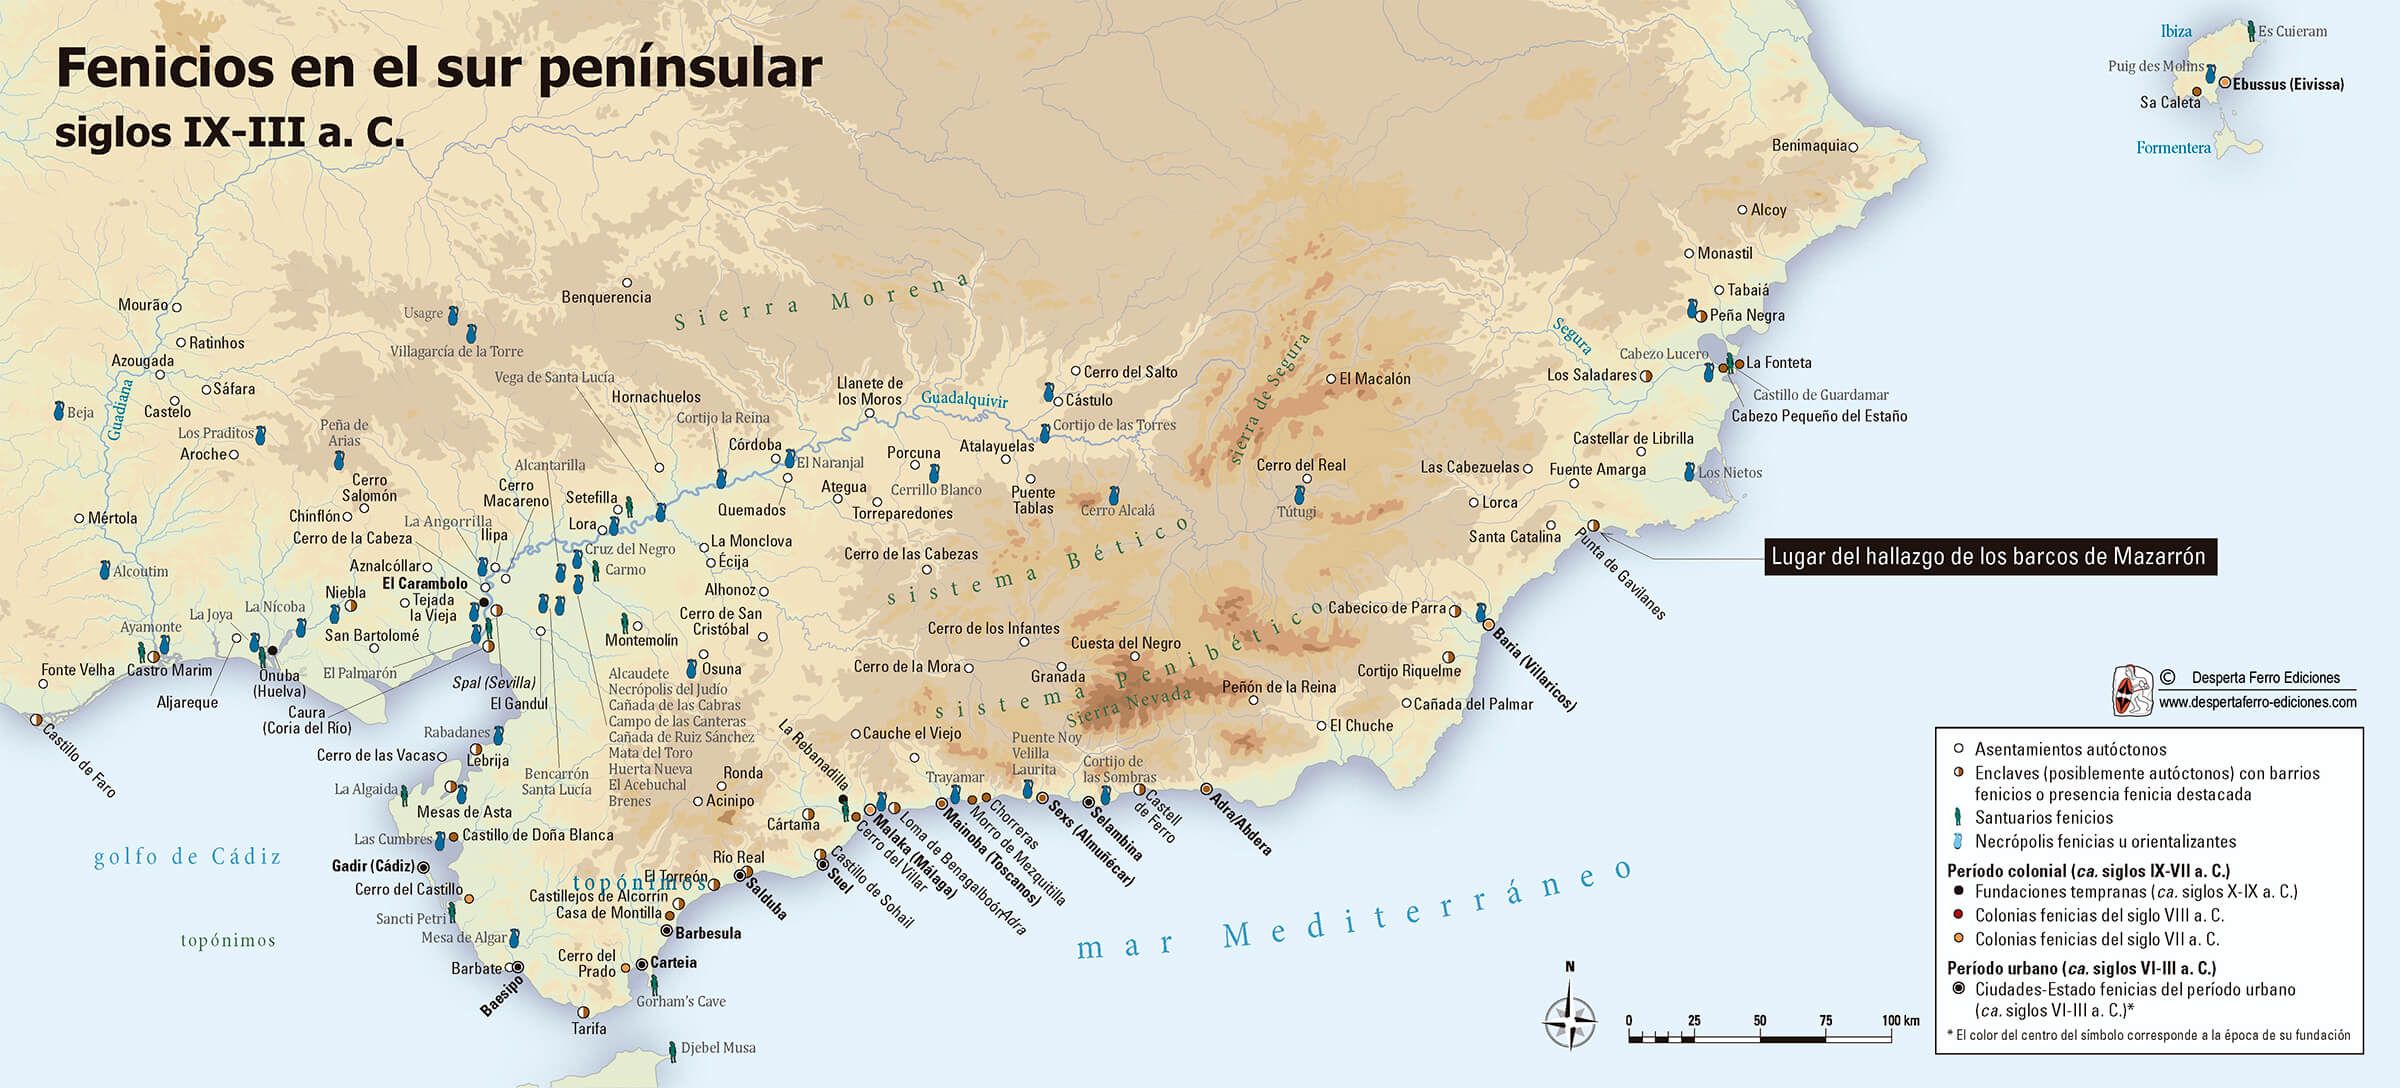 mapa vestigios fenicios en el sur peninsular españa Mazarrón 2